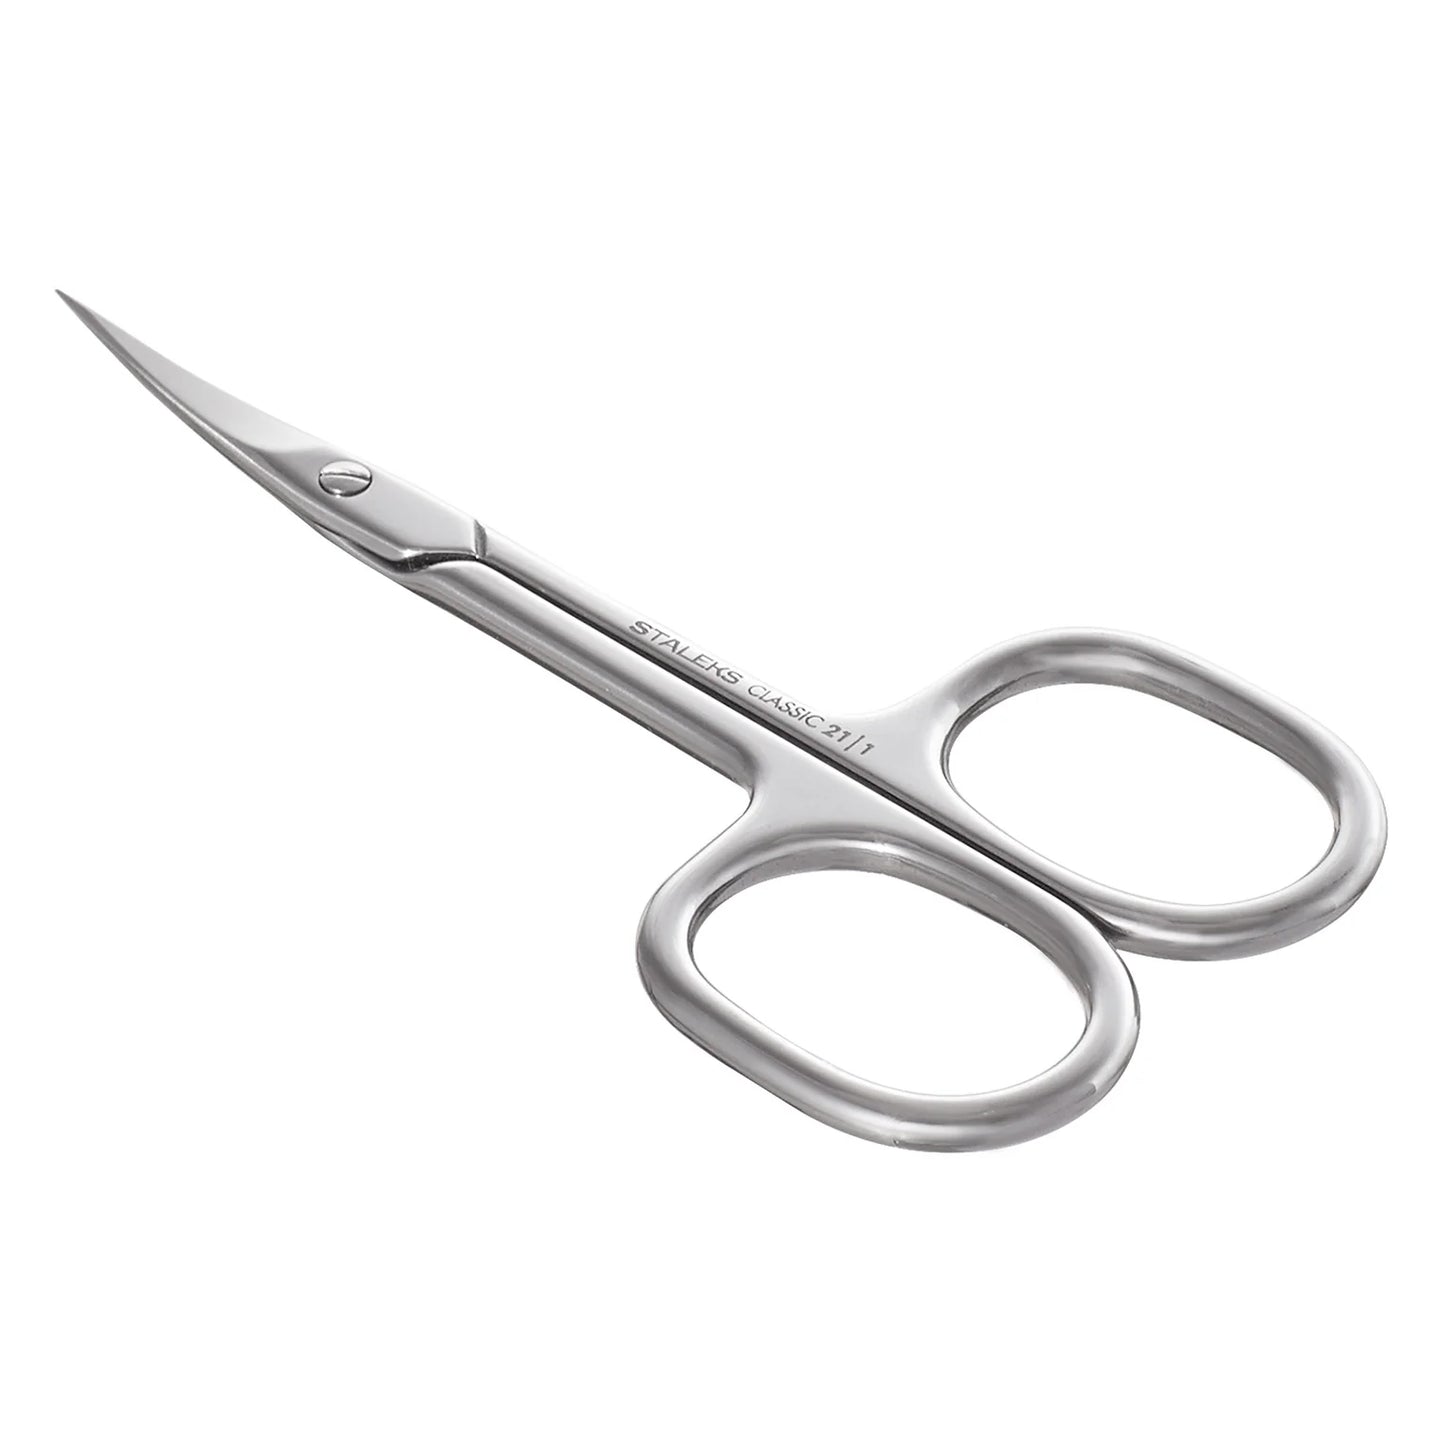 Cuticle scissors CLASSIC 21 TYPE 1 -SC-21/1